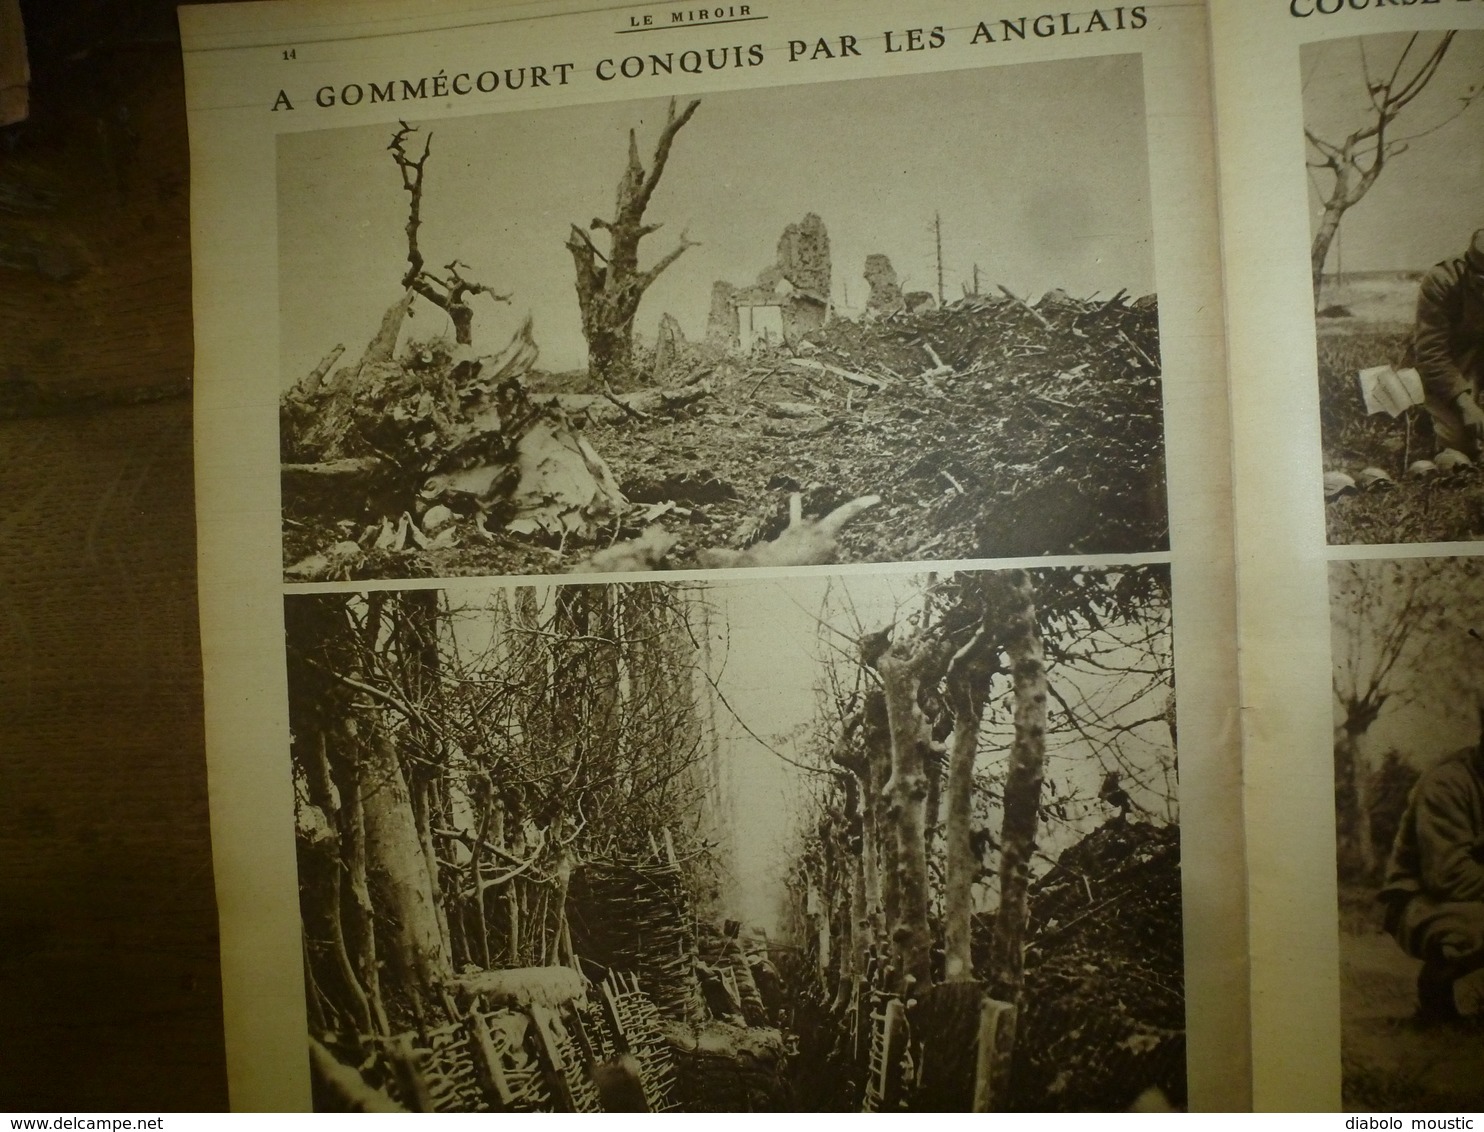 1917 LE MIROIR:Course de tortues sur le front;Nicolas II et Alexis;Belges en Afrique allemande;Gravure de Carrey;etc